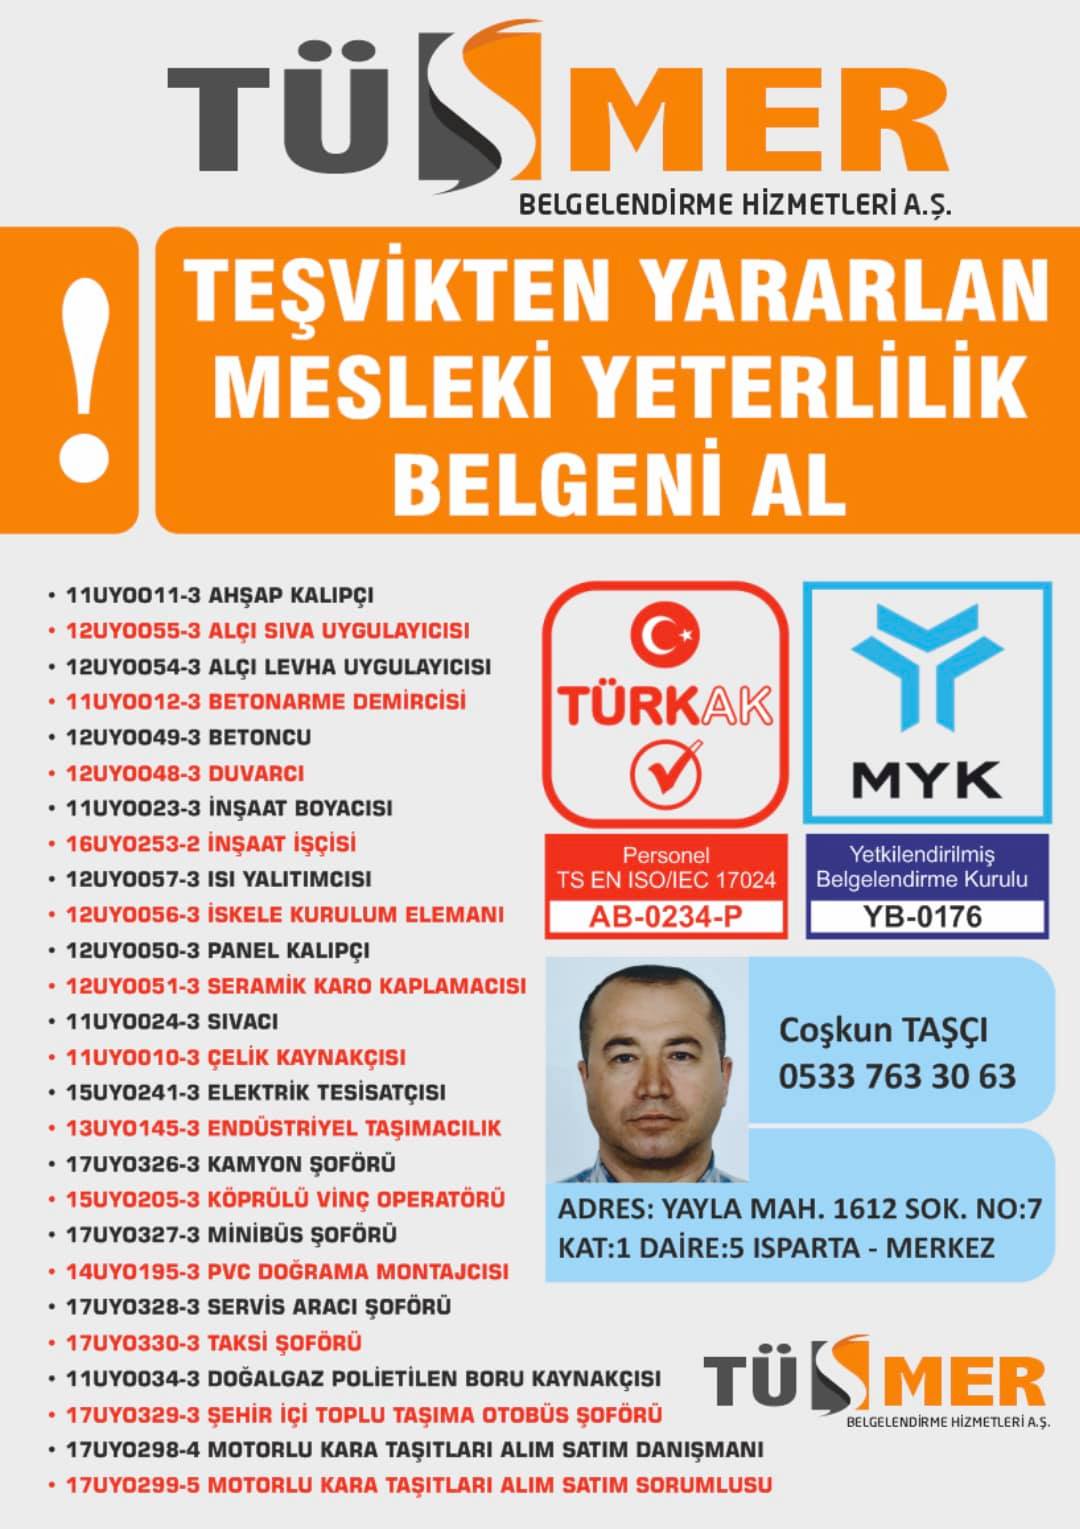 MYK MESLEKİ YETERLİLİK BELGESİ Esenkent Maltepe İstanbul